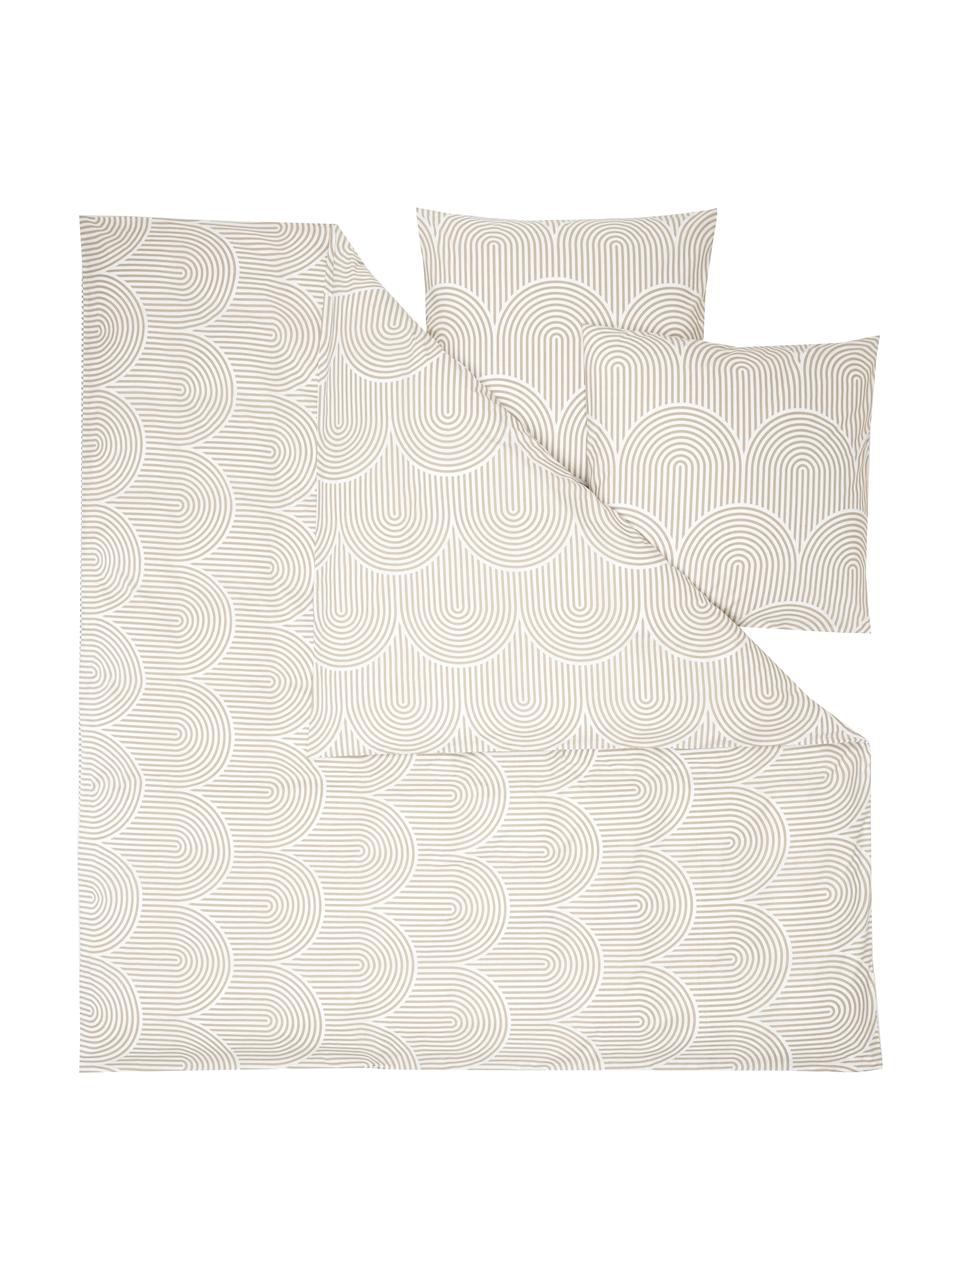 Vzorovaná bavlnená posteľná bielizeň Arcs, Béžová, 200 x 200 cm + 2 vankúše 80 x 80 cm